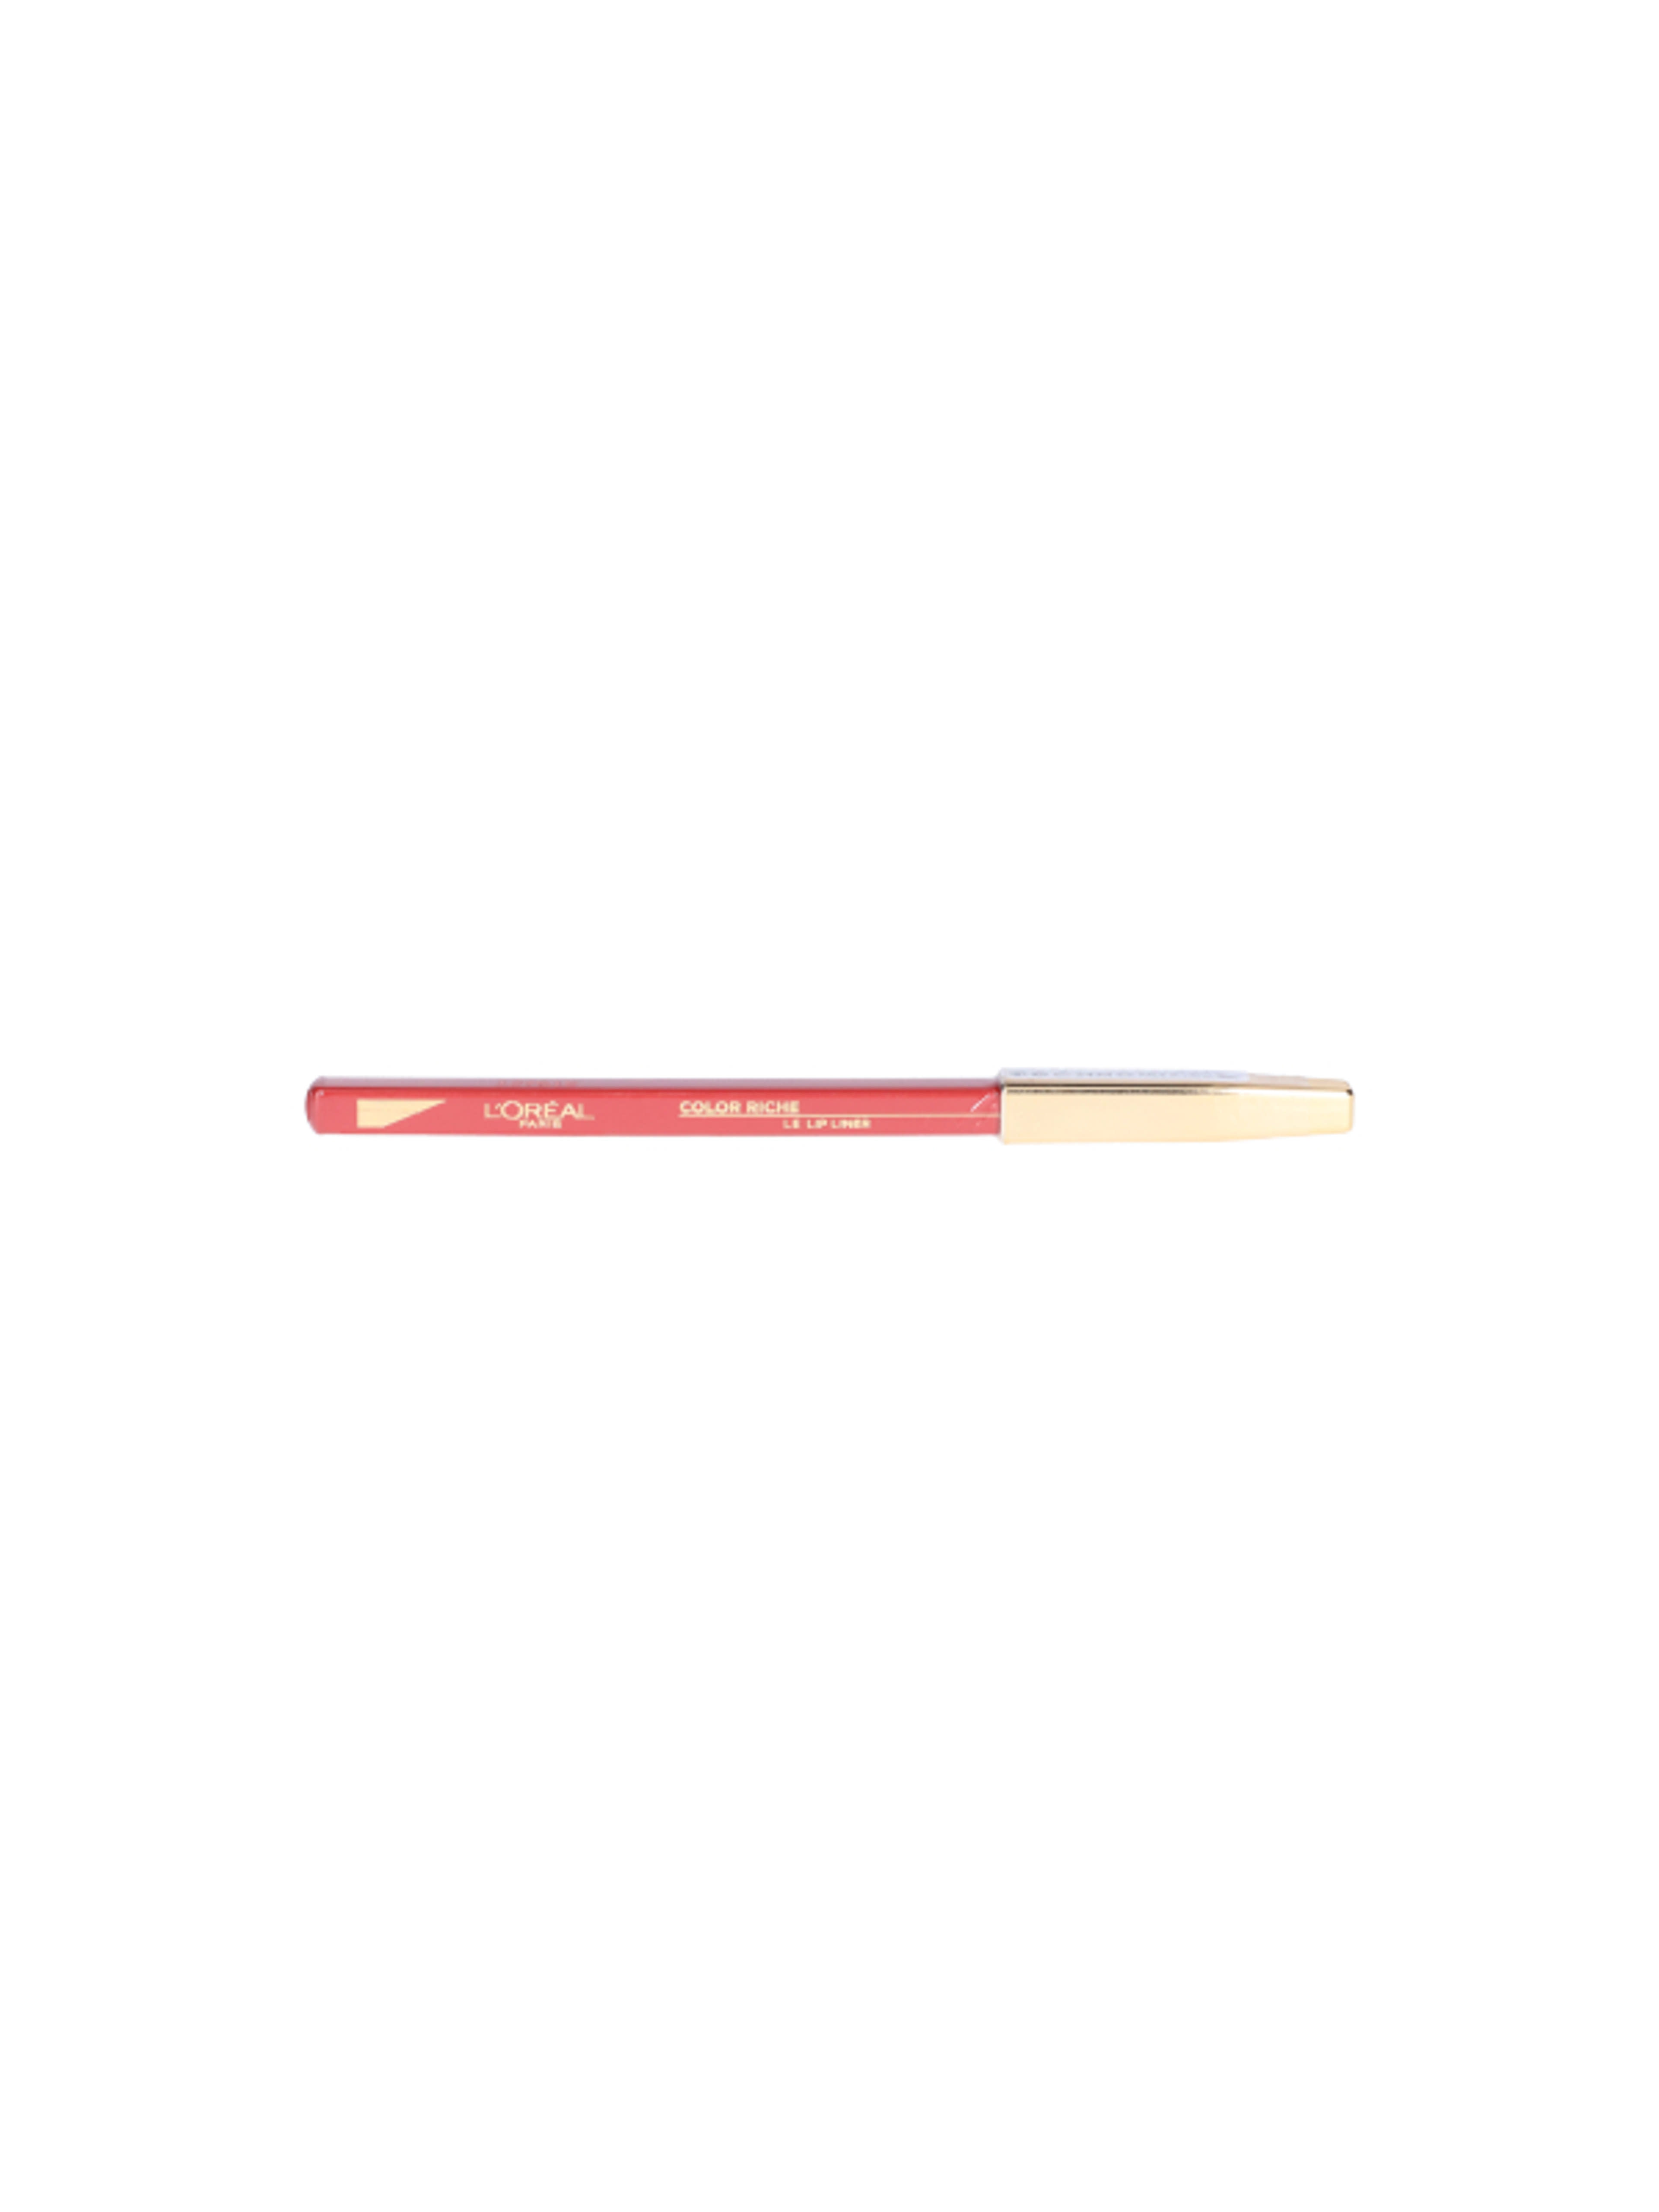 L'Oréal Paris Color Riche ajakkontúr ceruza 125 - 1 db